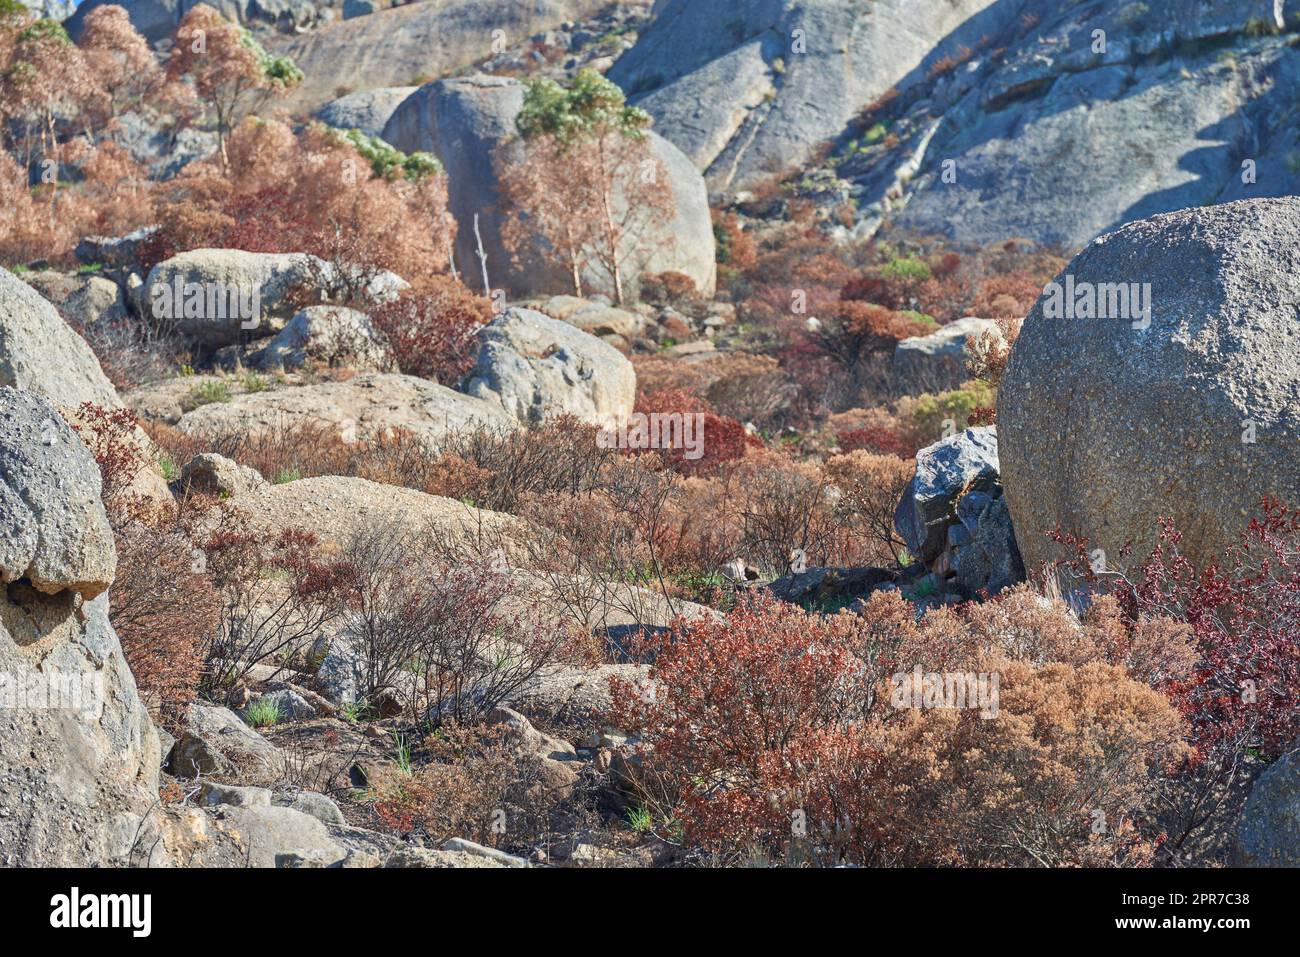 Große Felsen auf einem Berg Lions Head in Kapstadt, Südafrika. Große Steine und trockene braune Pflanzen im Freien auf einer Wanderung. Wilde Landschaft oder Felsbrocken auf dem Boden in der Nähe eines buschigen Gebiets Stockfoto